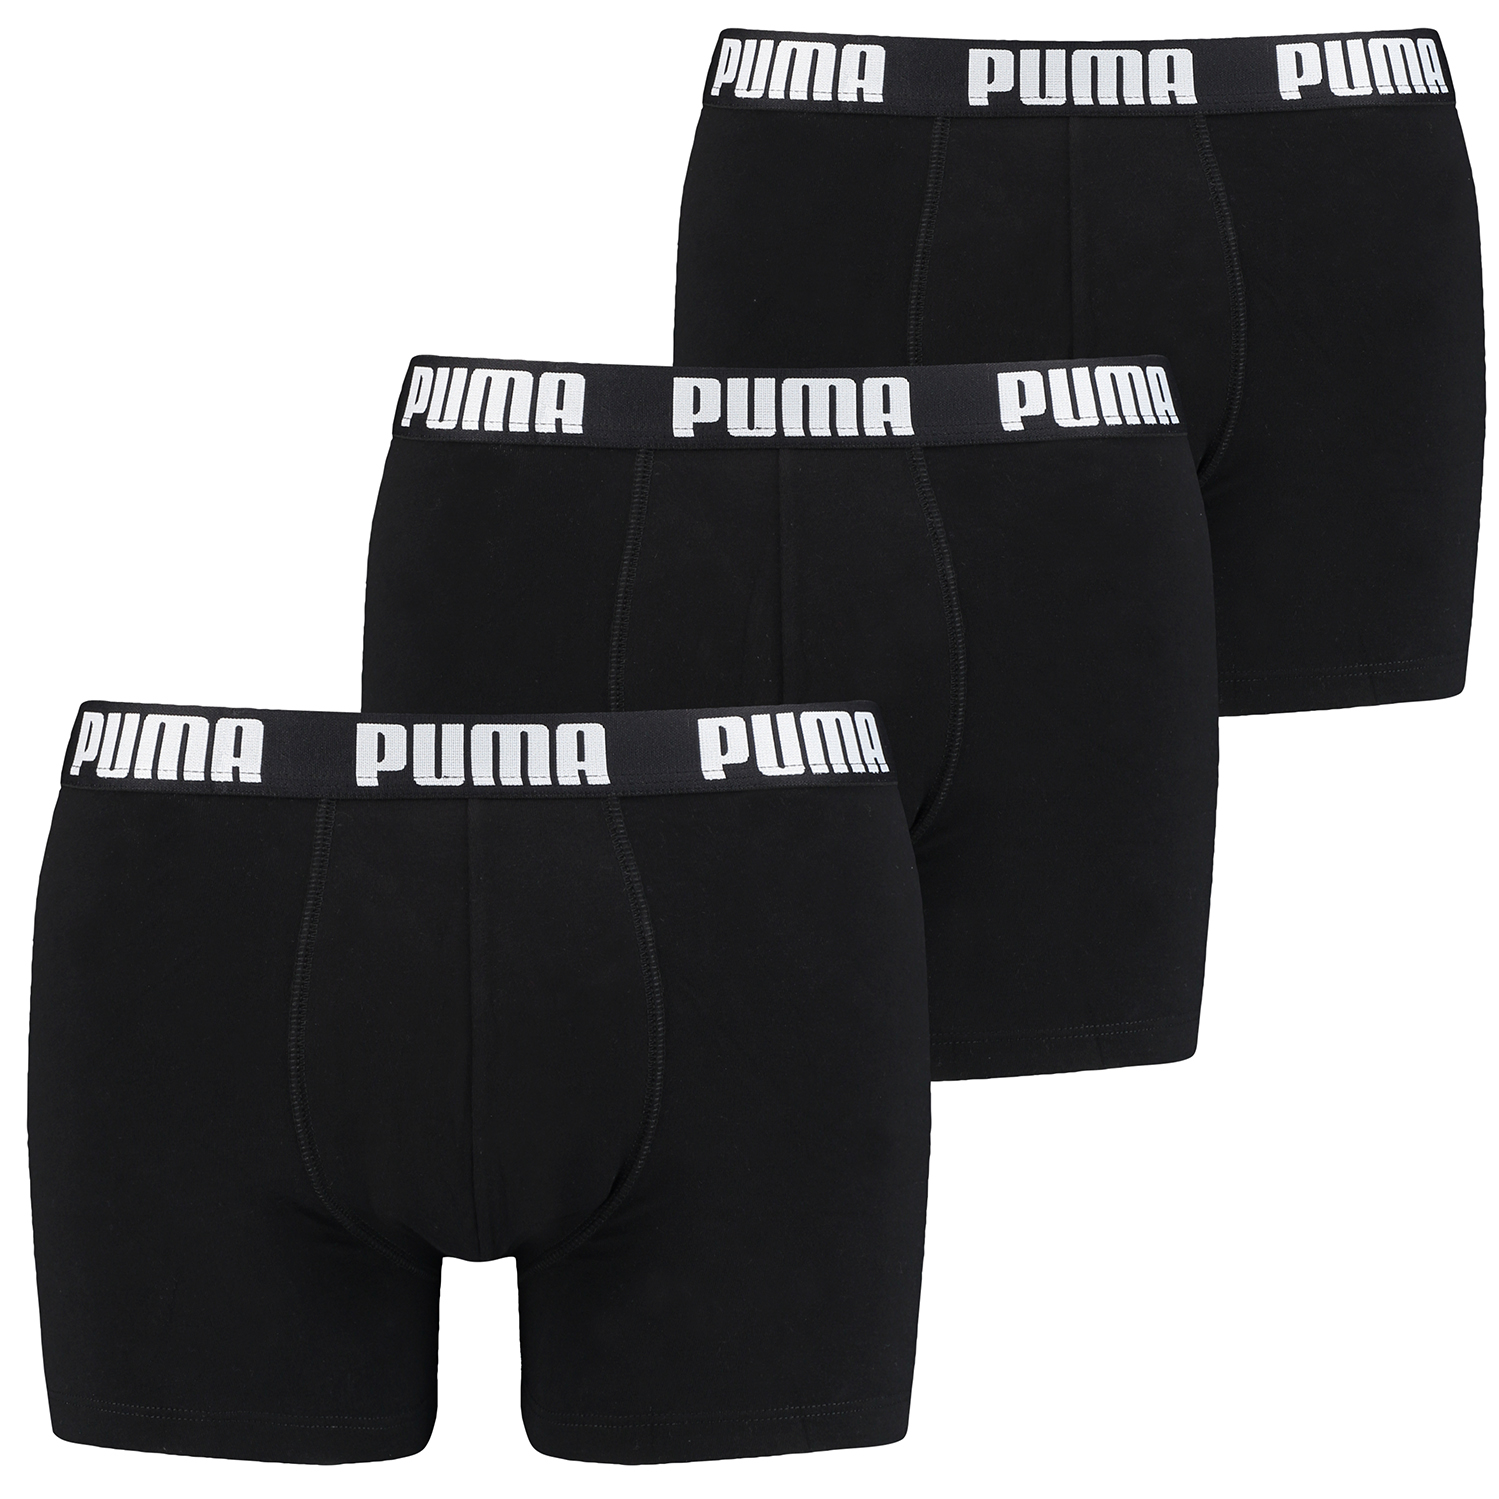 Puma Boxer Briefs Boxershorts Men Herren Everyday Unterhose Pant Unterwäsche 3 er Pack 